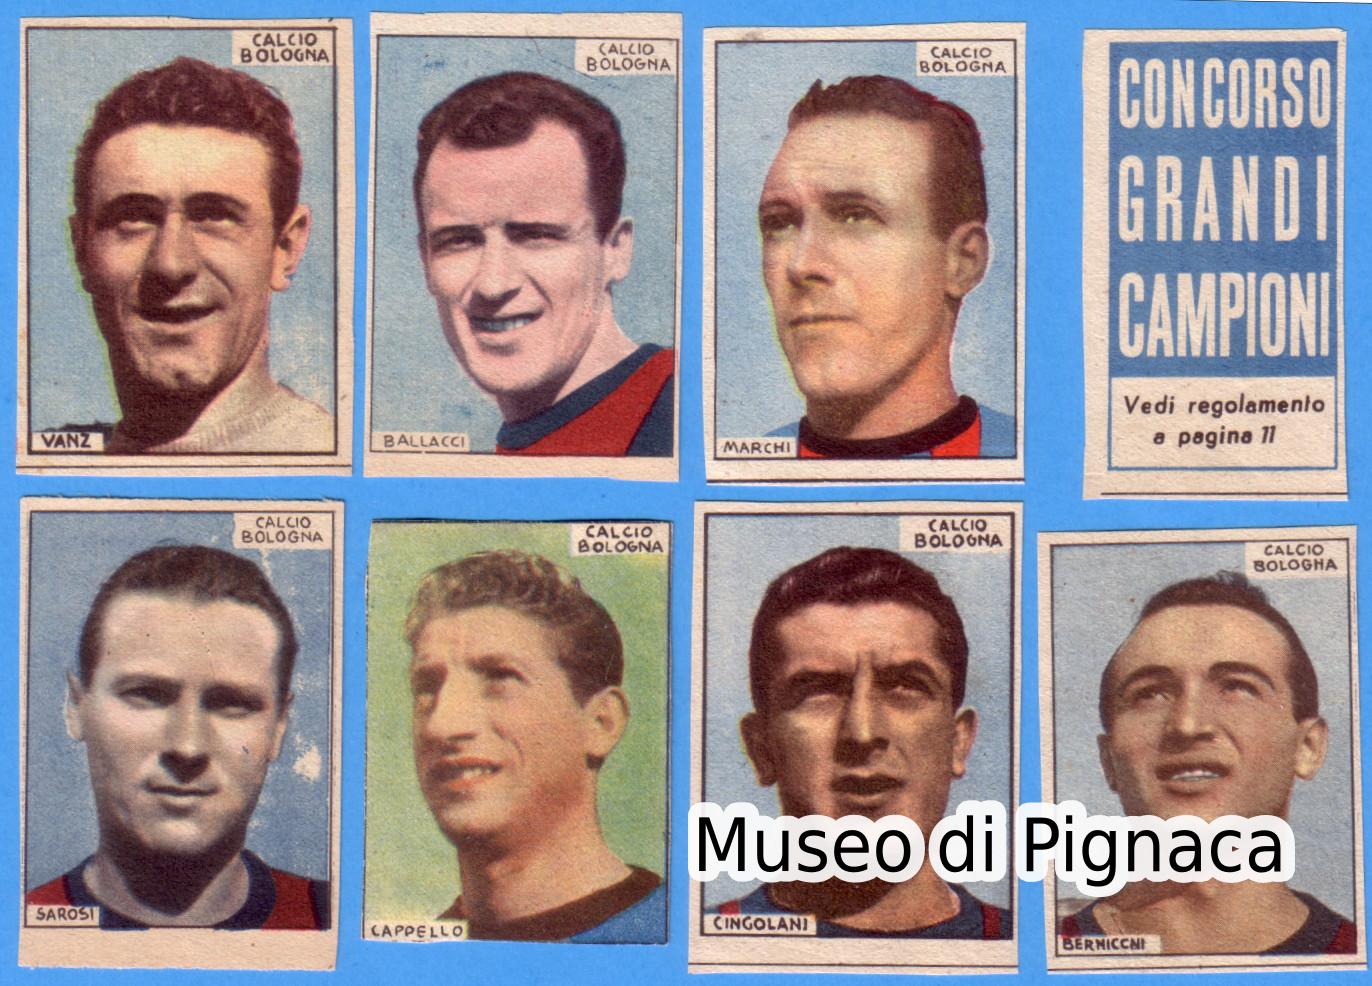 Edizioni AVE - 'Concorso Grandi Campioni' - 1948-49 Bologna FC